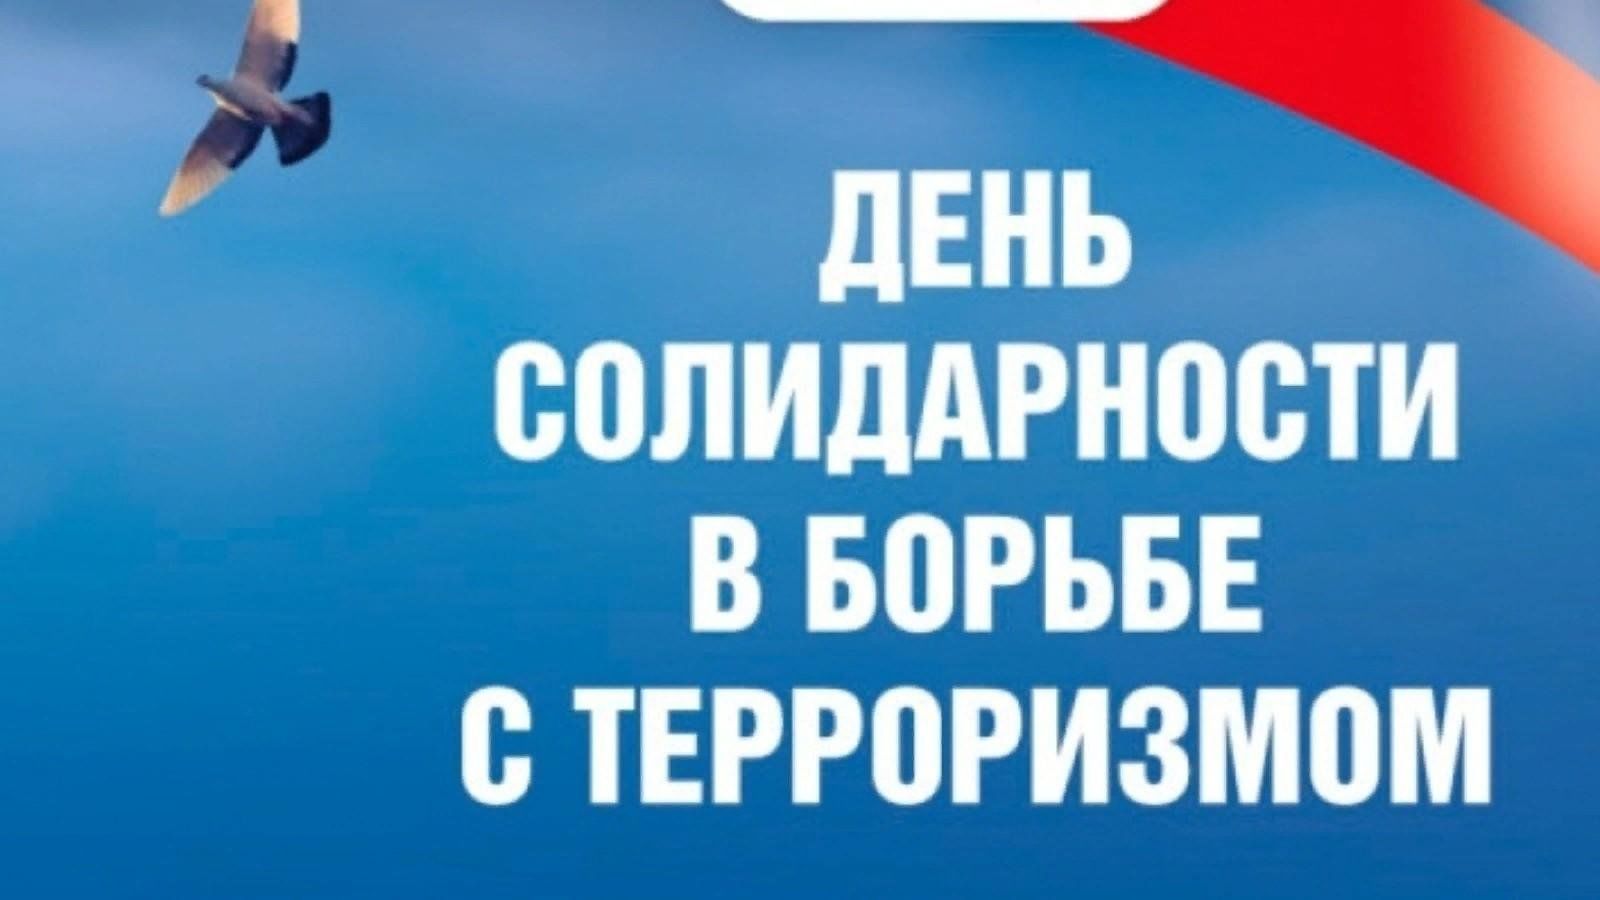 В Горно-Алтайске состоялся митинг, посвященный Дню солидарности борьбы с терроризмом